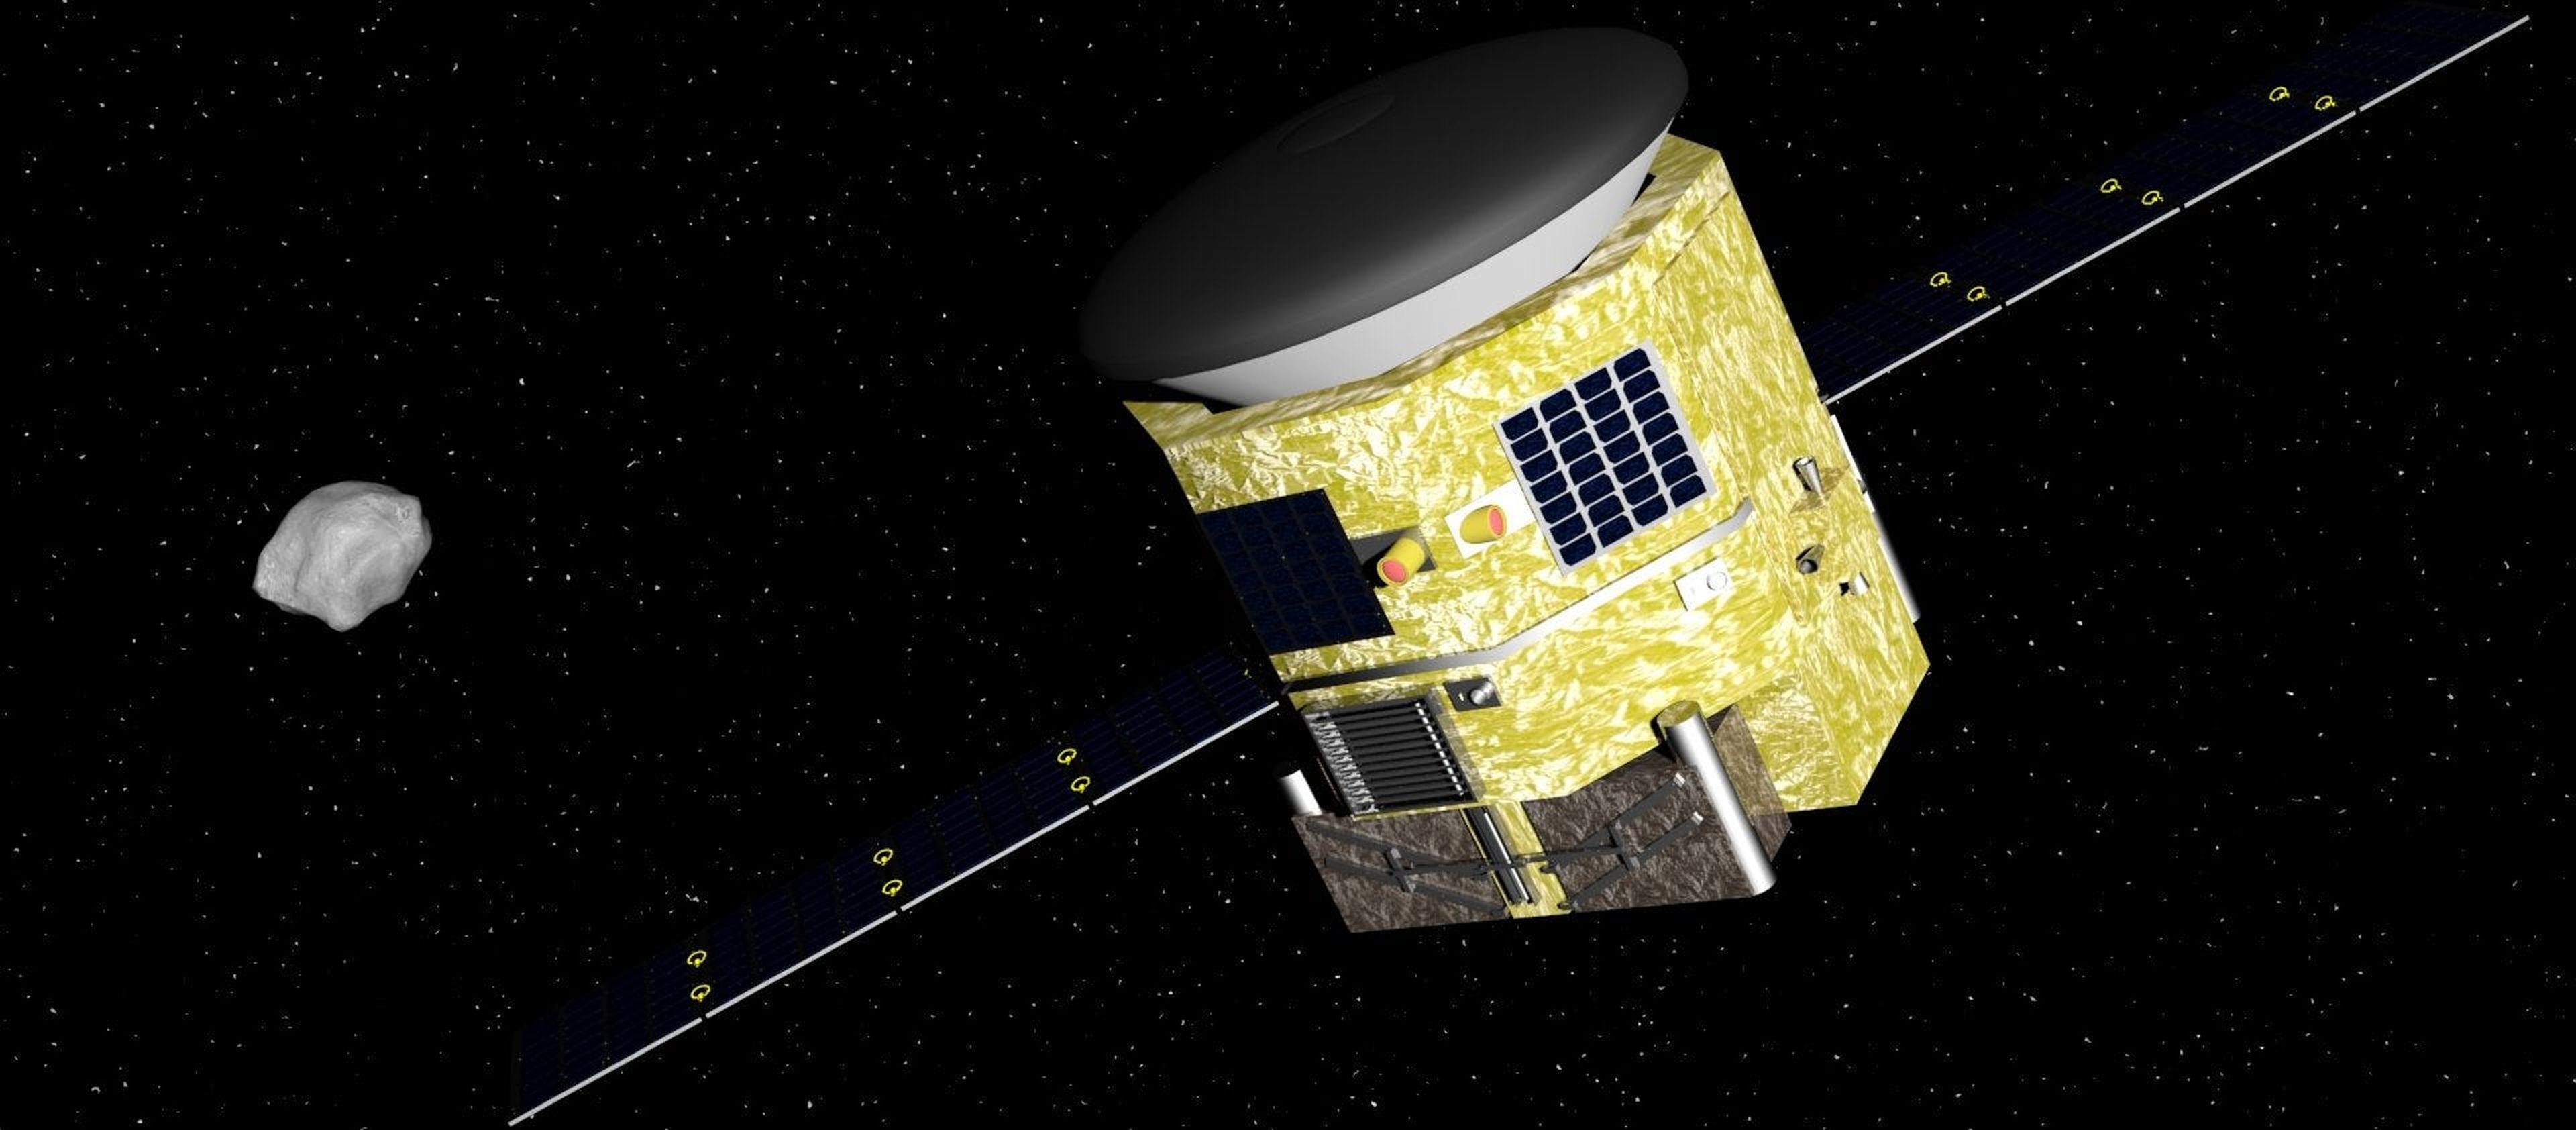 Imagen conceptual de la sonda minera de Asteroid Mining Corporation, diseñada para aterrizar en asteroides y explotarlos.